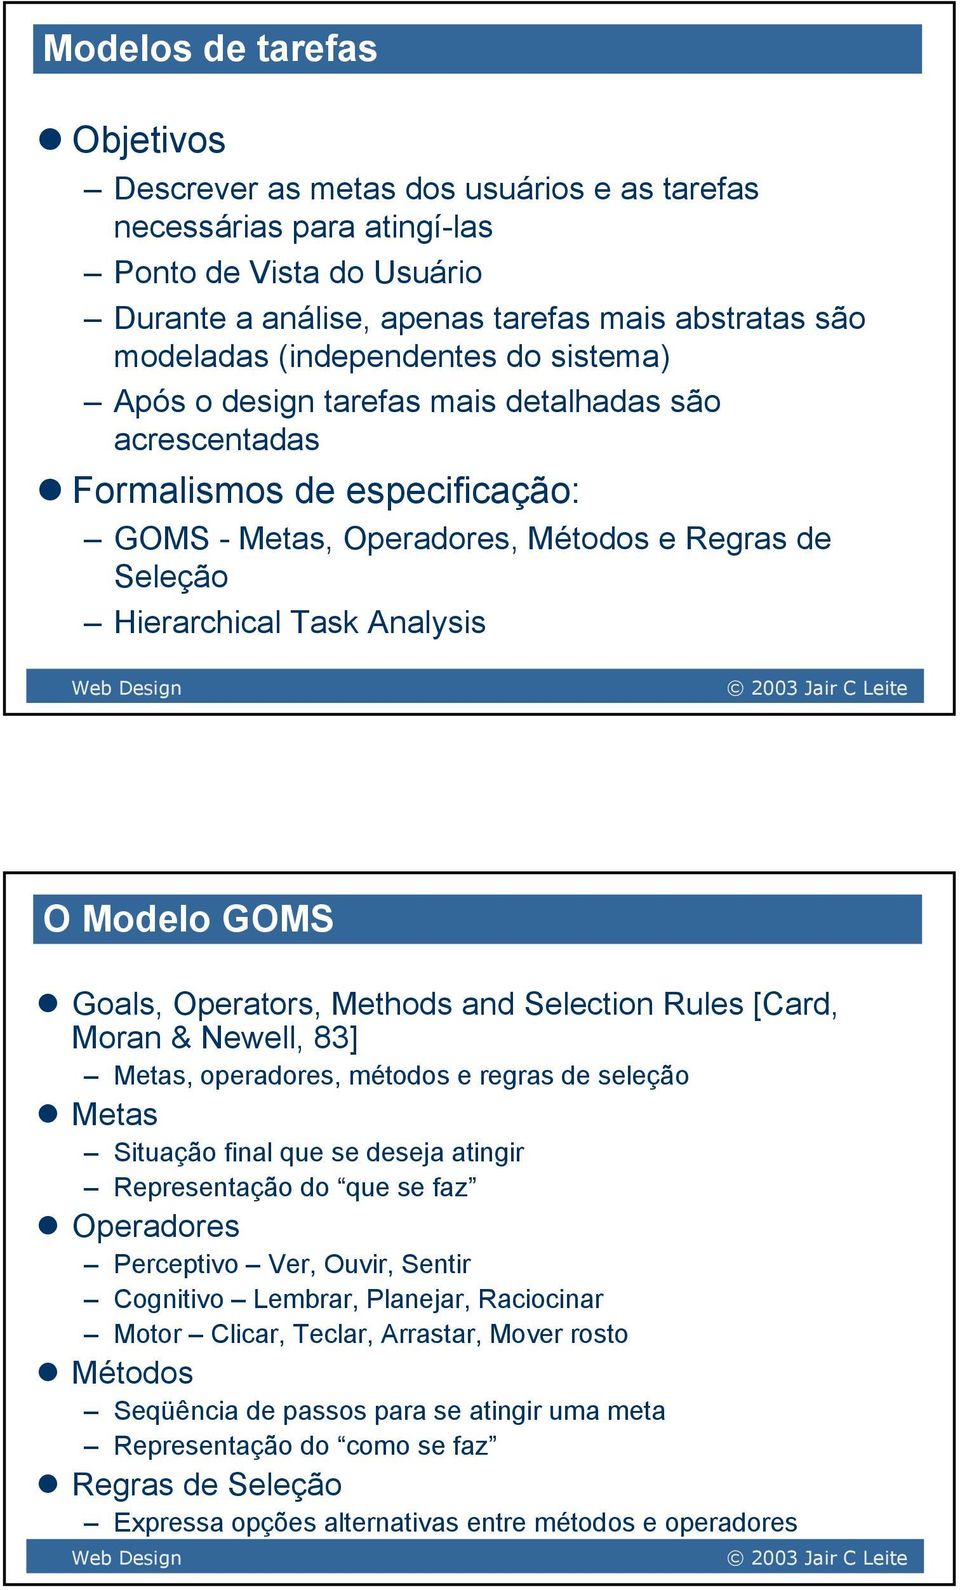 Modelo GOMS Goals, Operators, Methods and Selection Rules [Card, Moran & Newell, 83] Metas, operadores, métodos e regras de seleção Metas Situação final que se deseja atingir Representação do que se